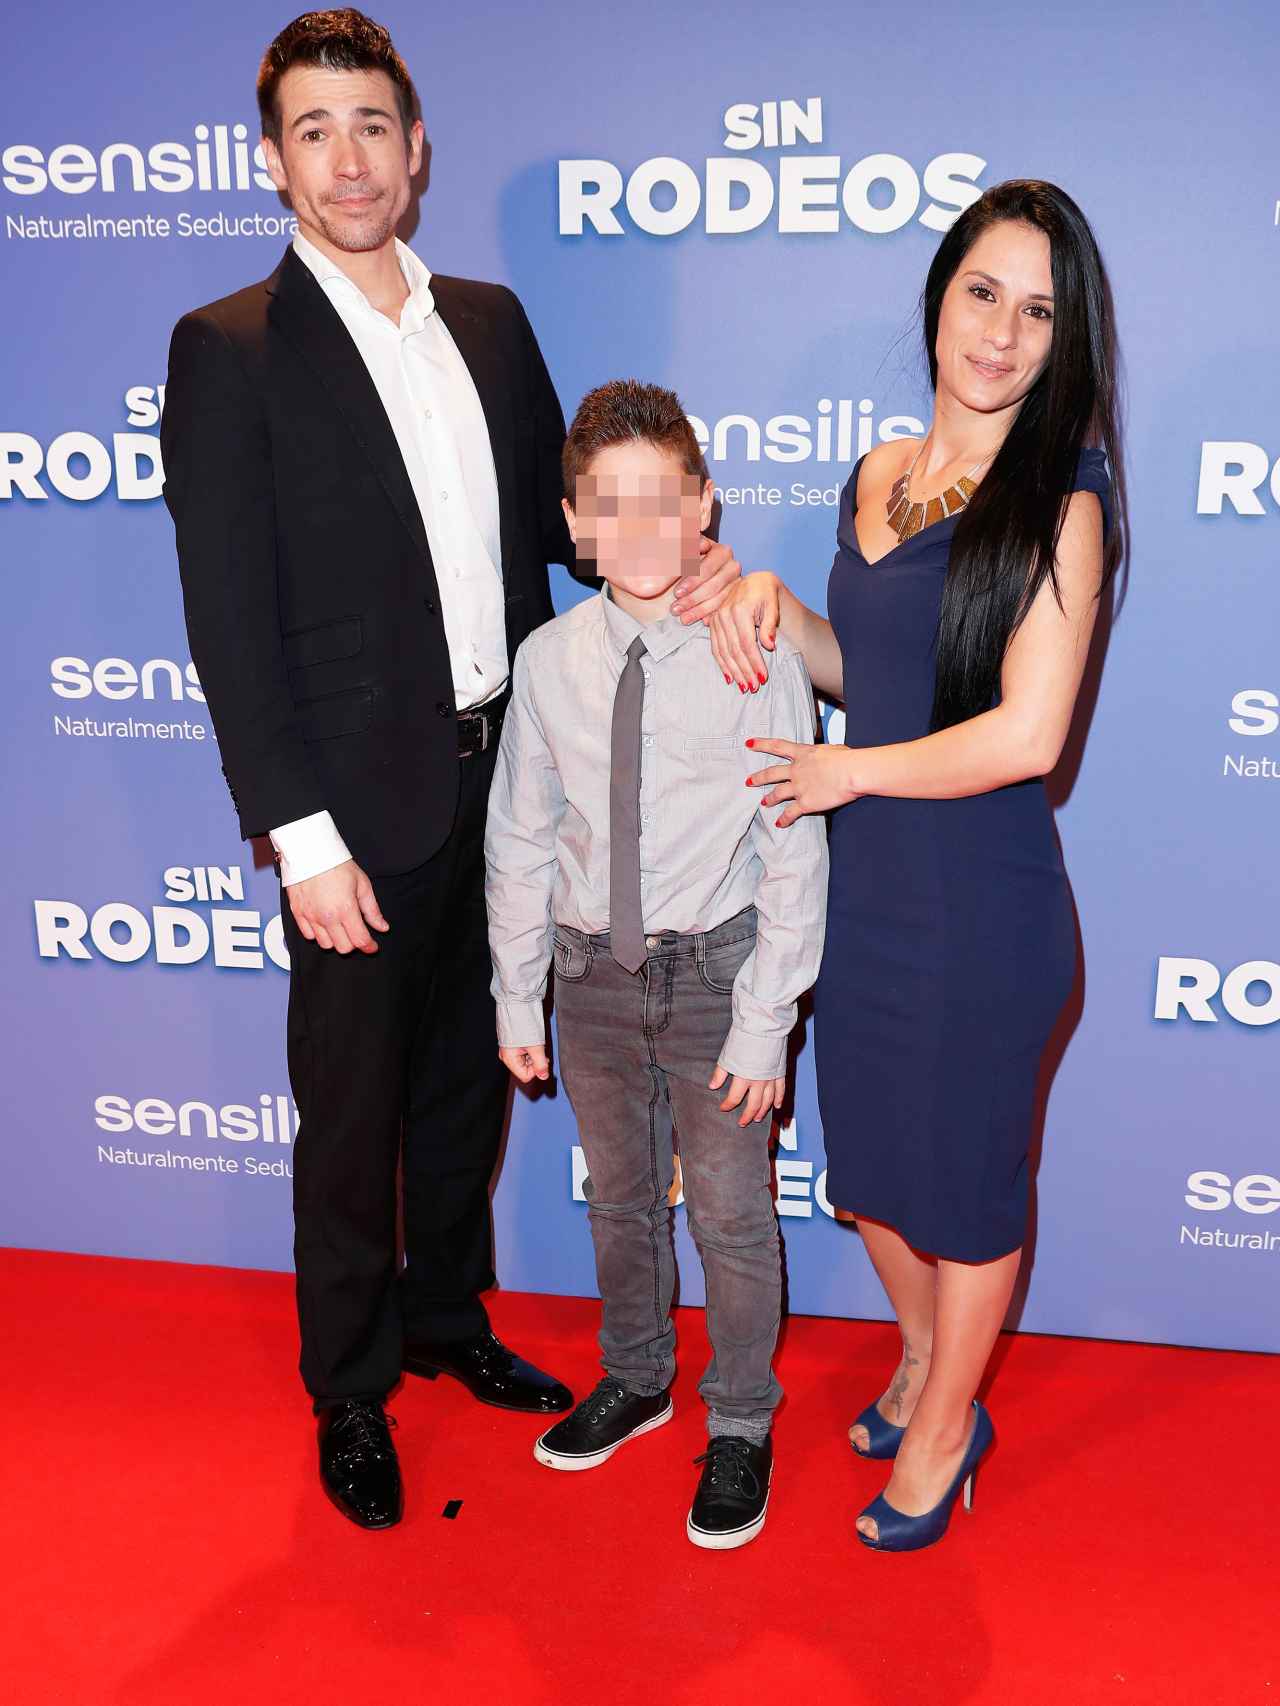 Juan Jose Ballesta junto a su expareja, Verónica Rebollo, y su hijo en la presentación de la película 'Rodeos'.